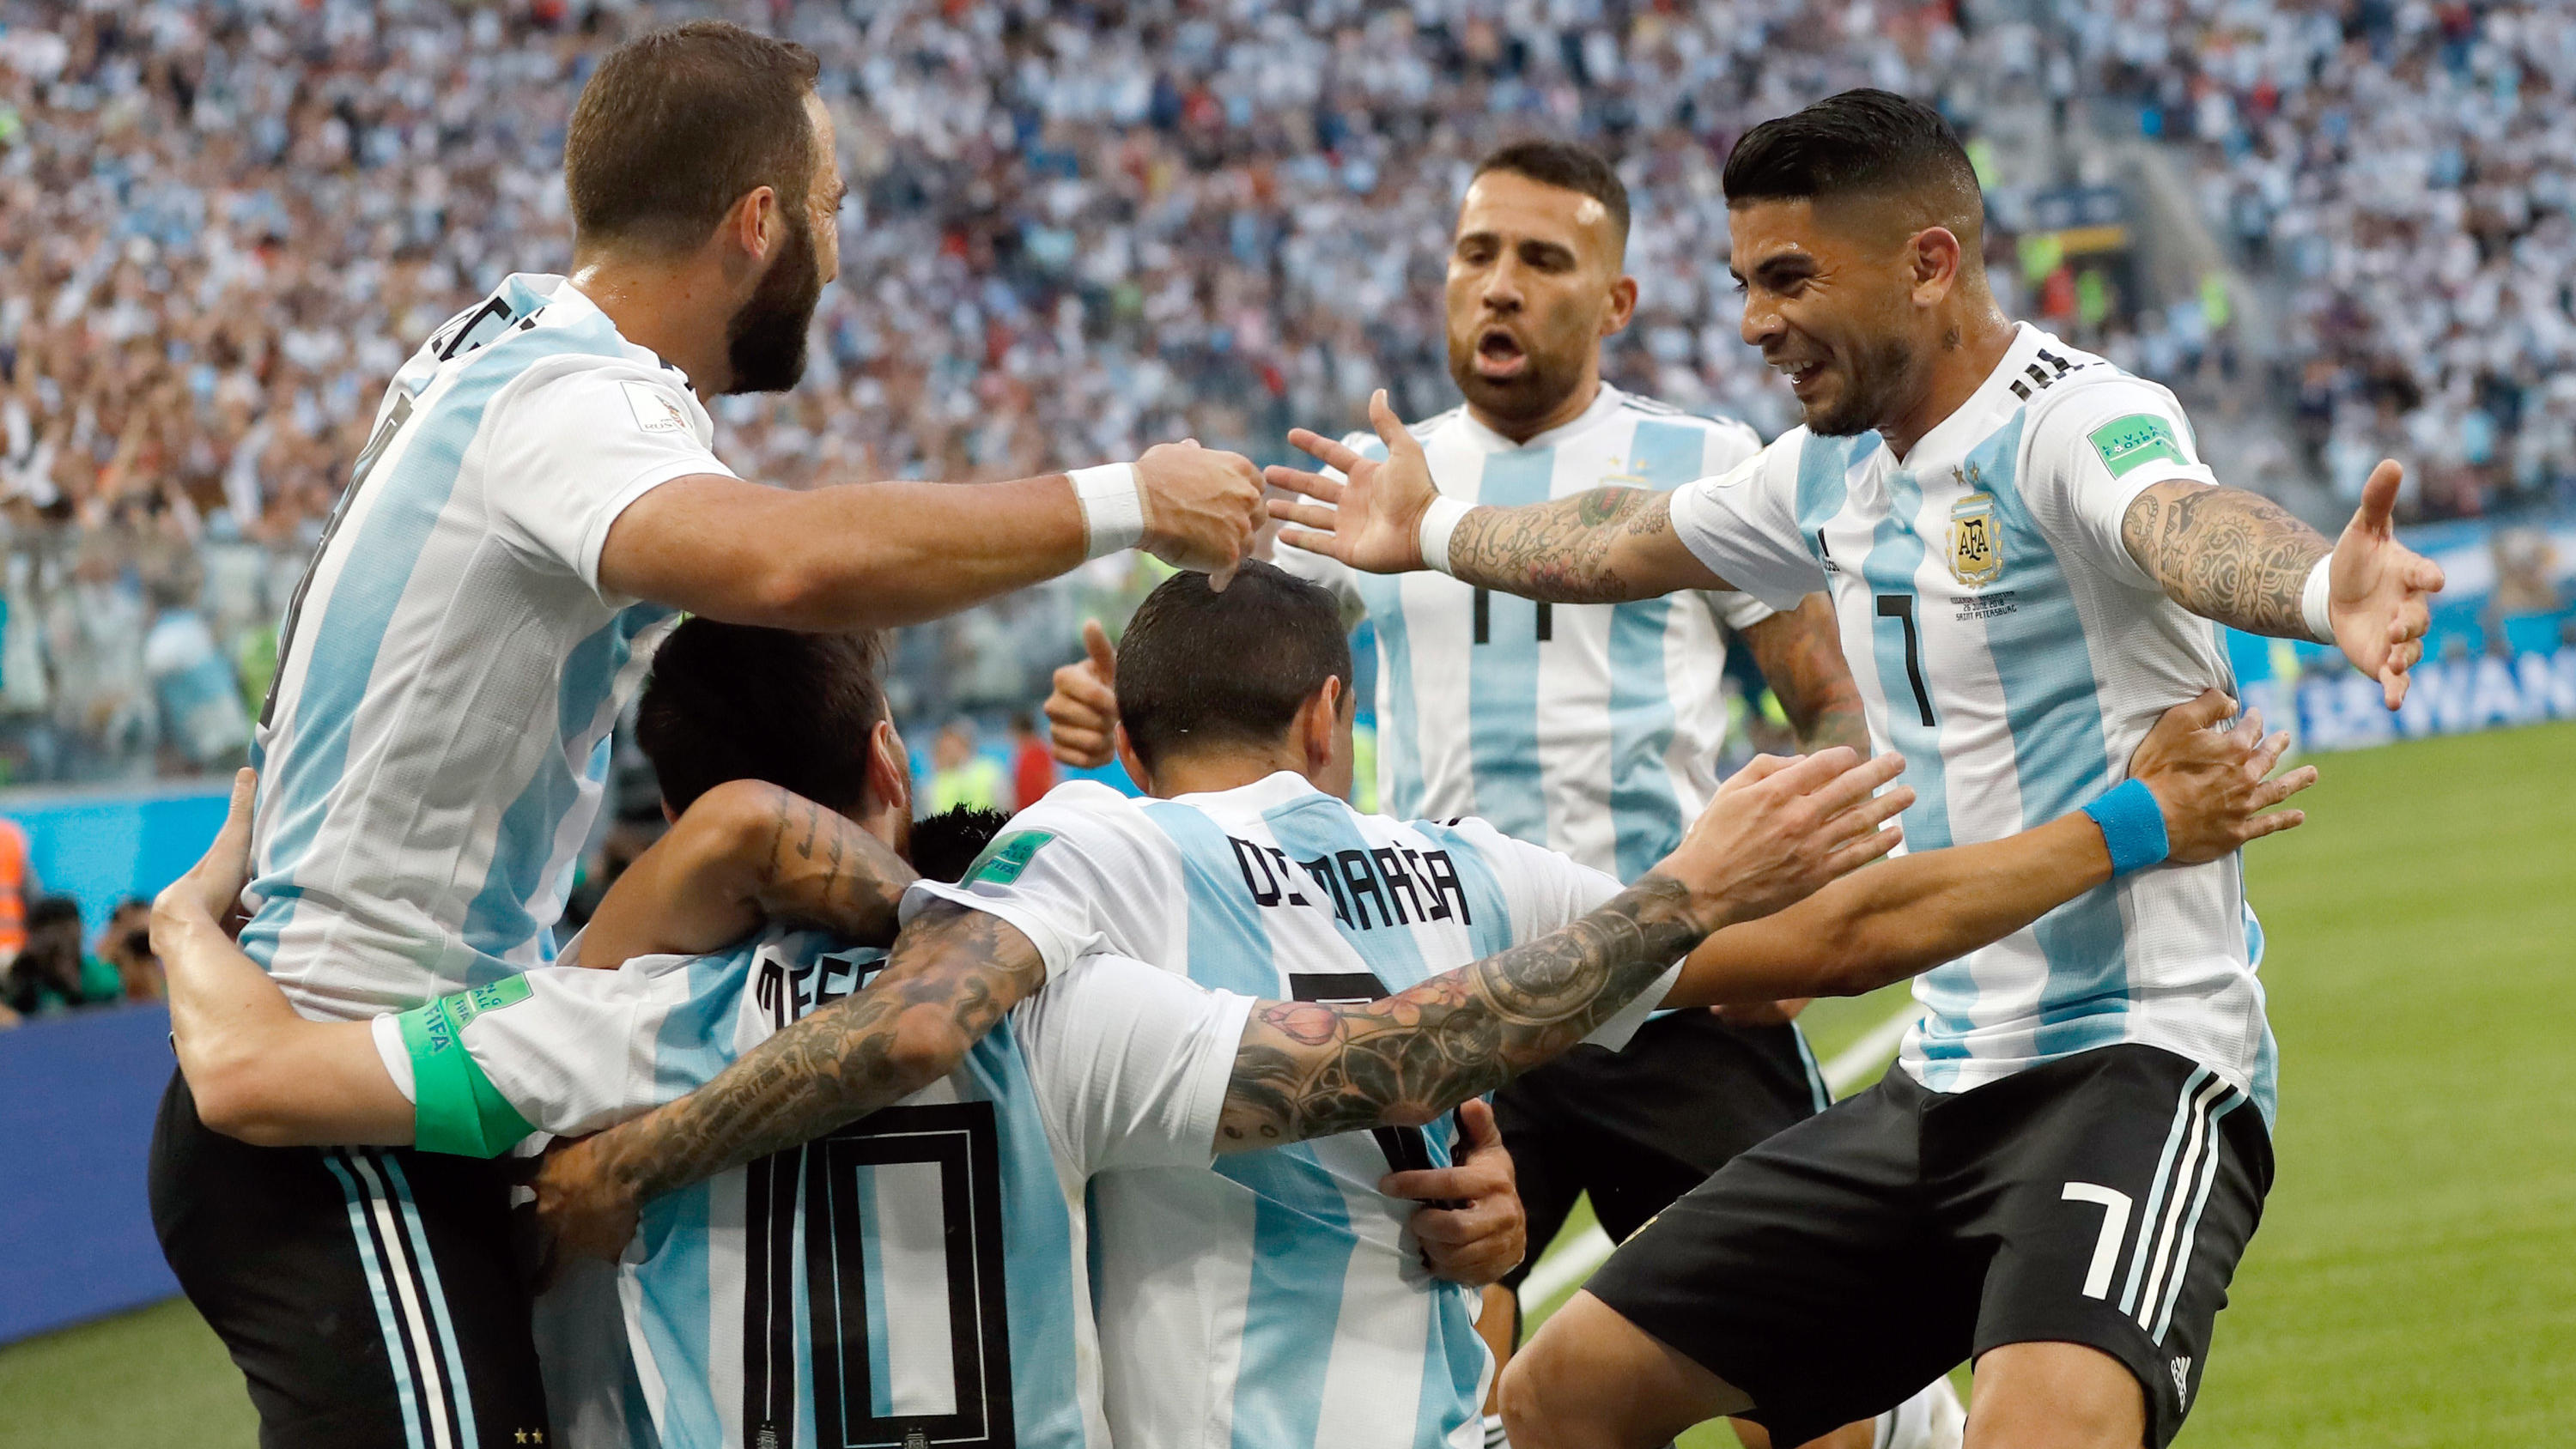 Riesiger Jubel: Argentinien bleibt nach einem späten Tor im Turnier.